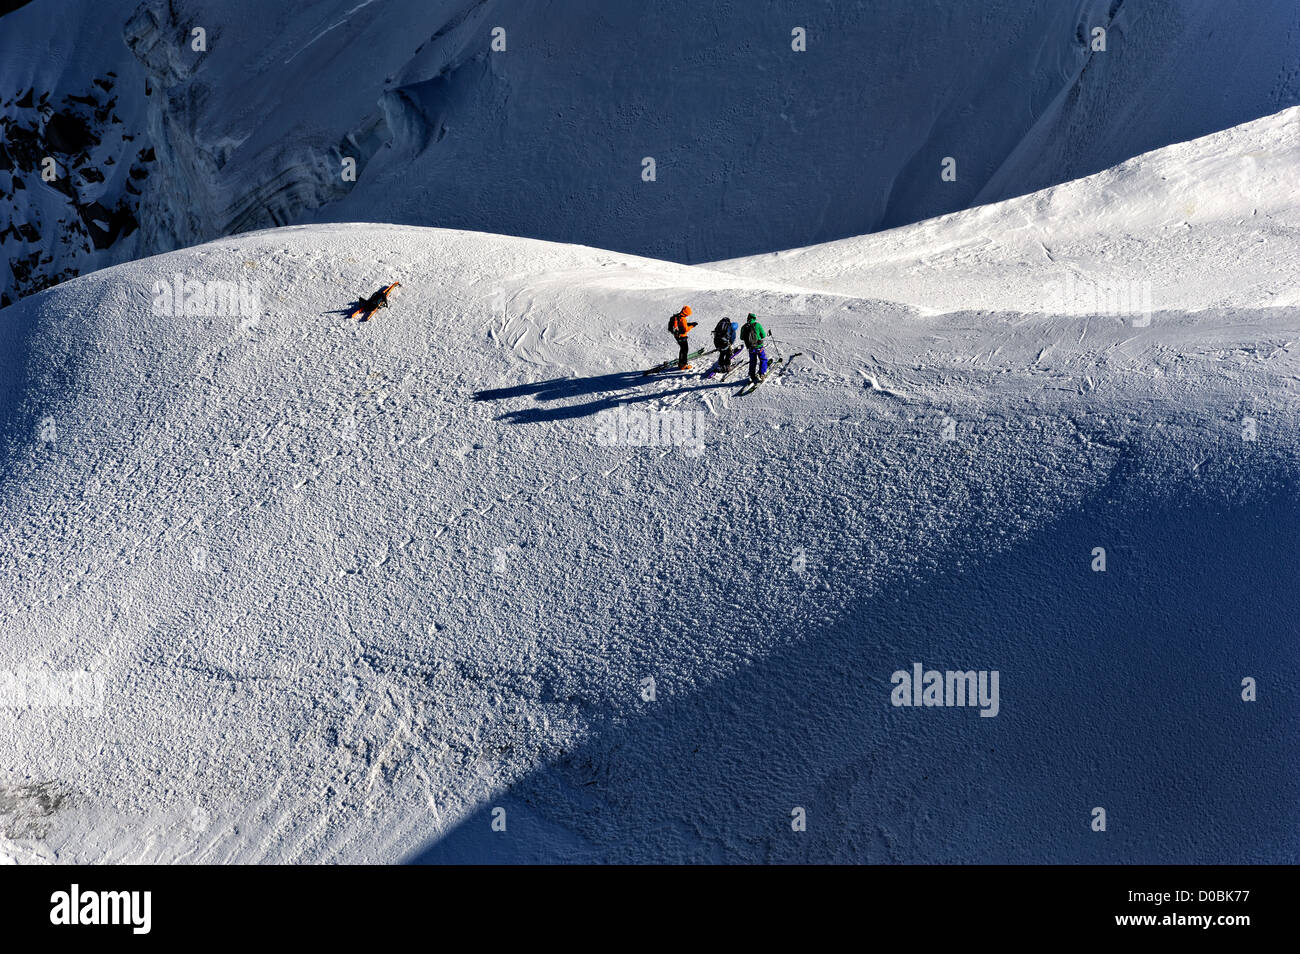 Mountaineers near Aiguille du Midi, Chamonix, France. Stock Photo